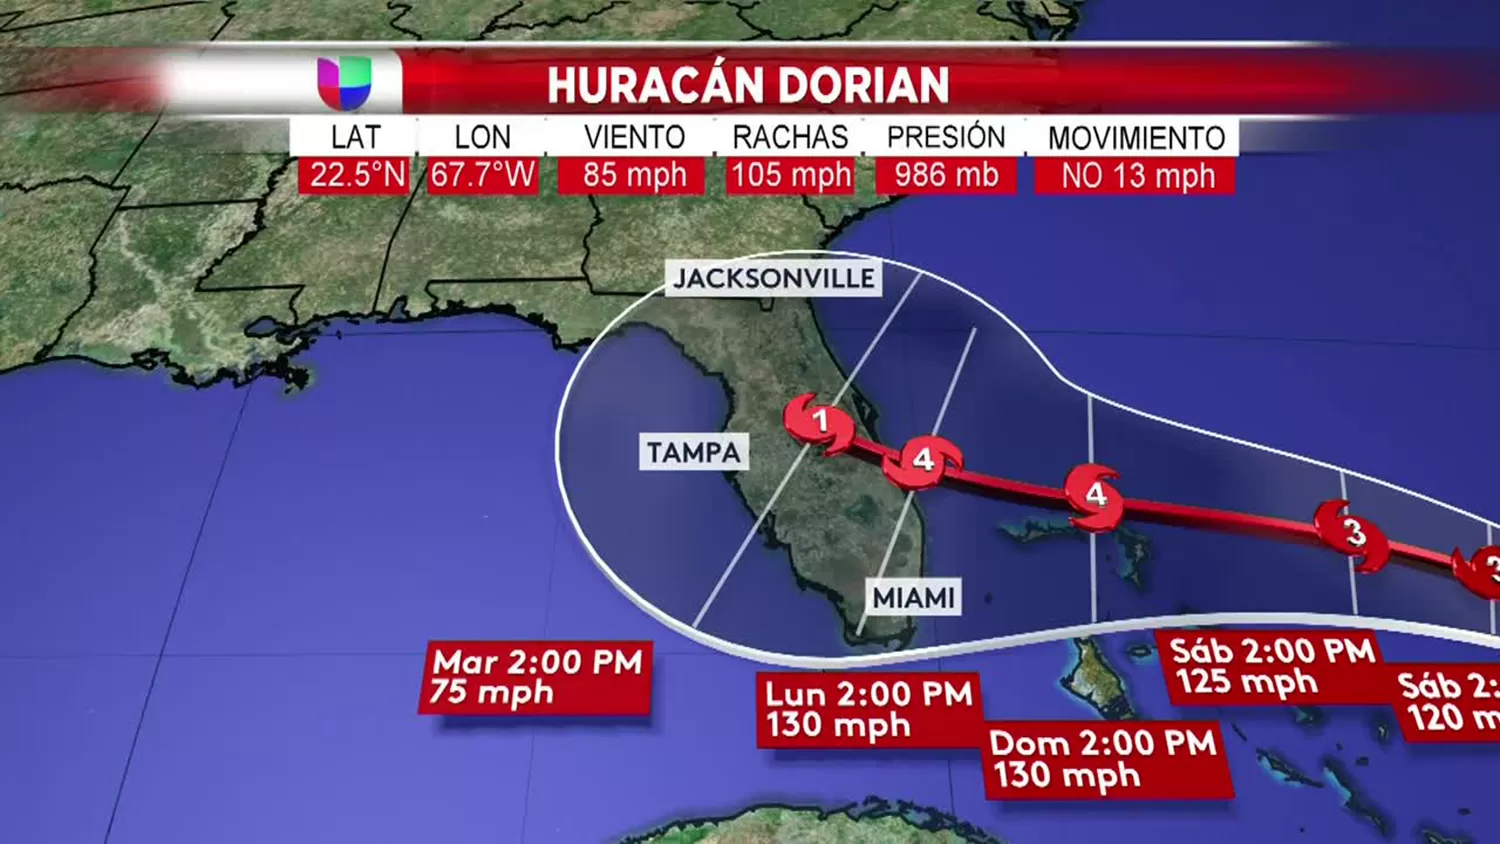 El huracán Dorian podría ser extremadamente peligroso al llegar a Florida